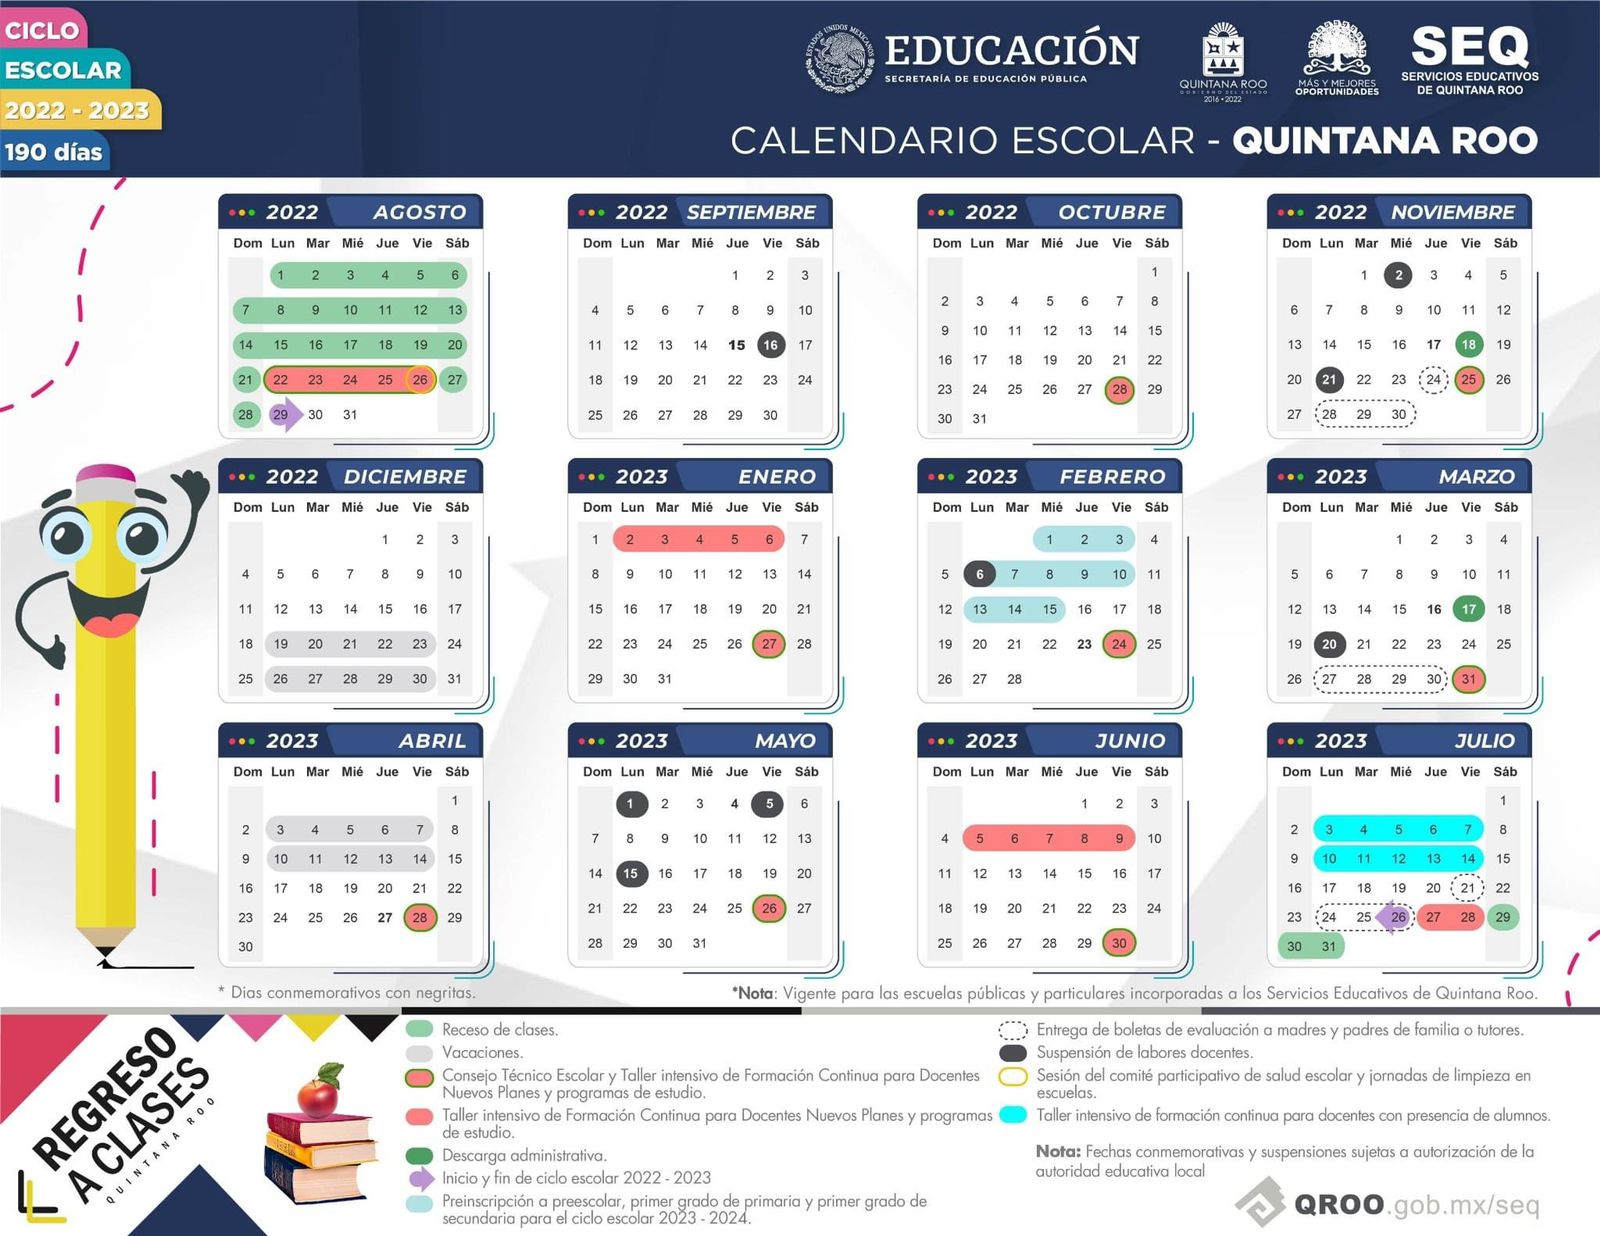 SEQ da a conocer Calendario Escolar 20222023 regreso a clases